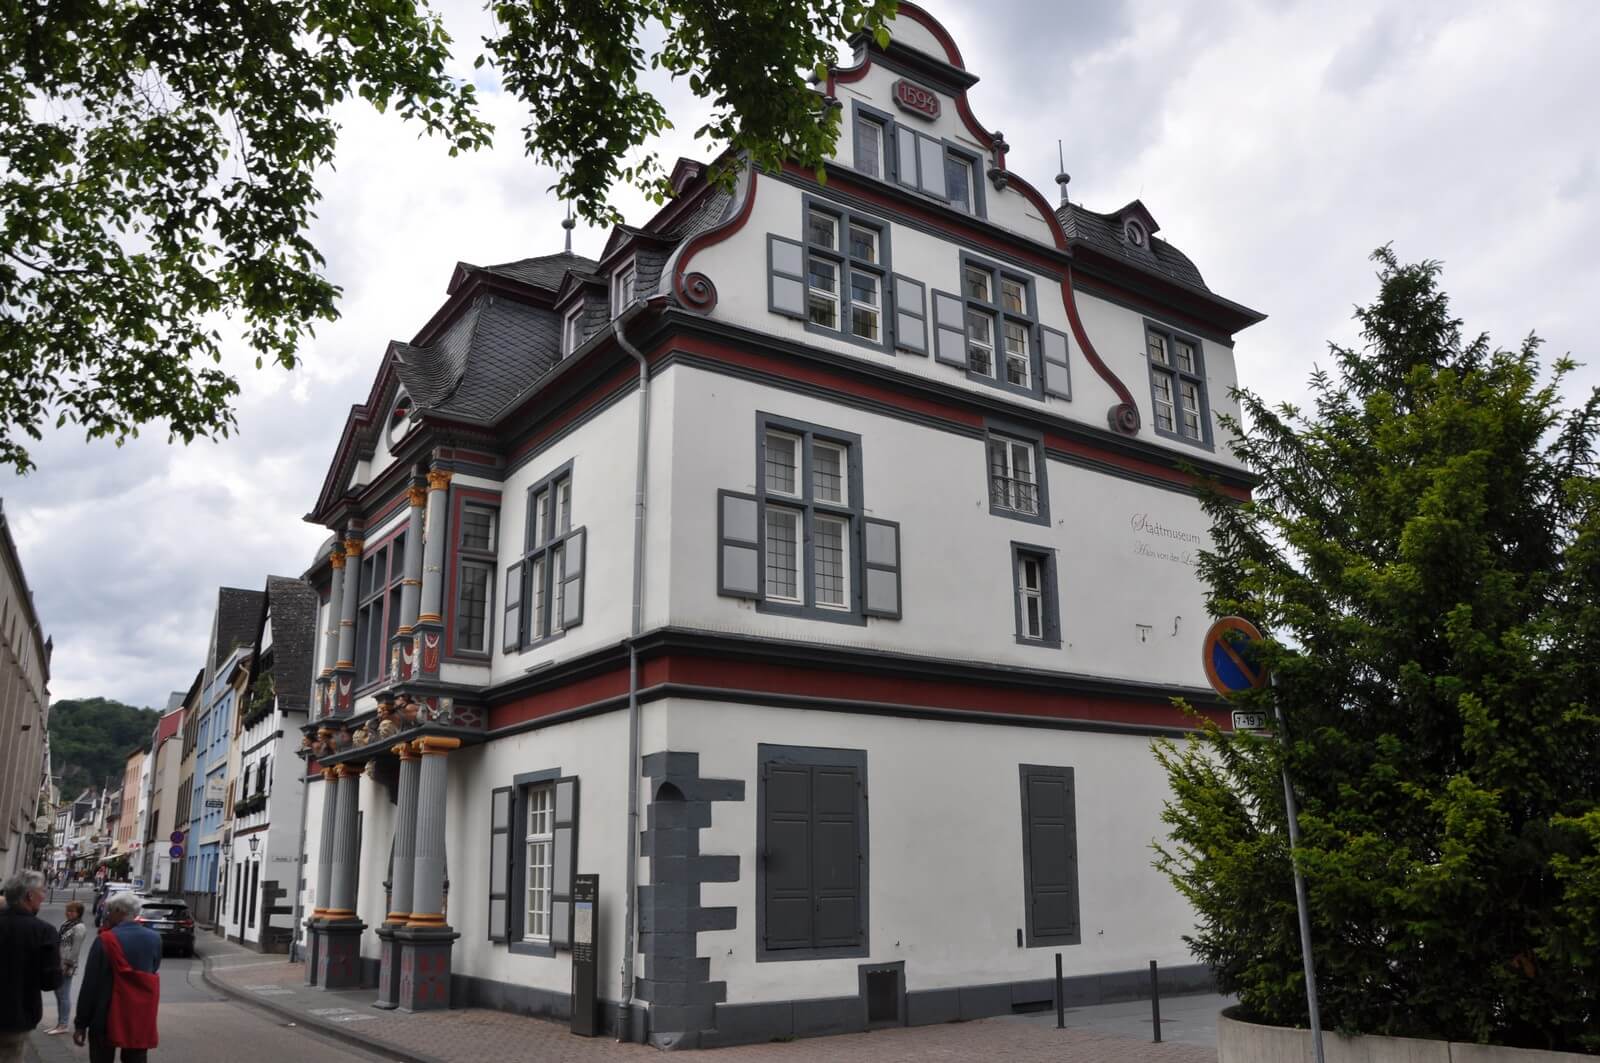 Das Stadtmuseum von 1600 in Andernach - Haus van der Leyen - Lupe Reisen